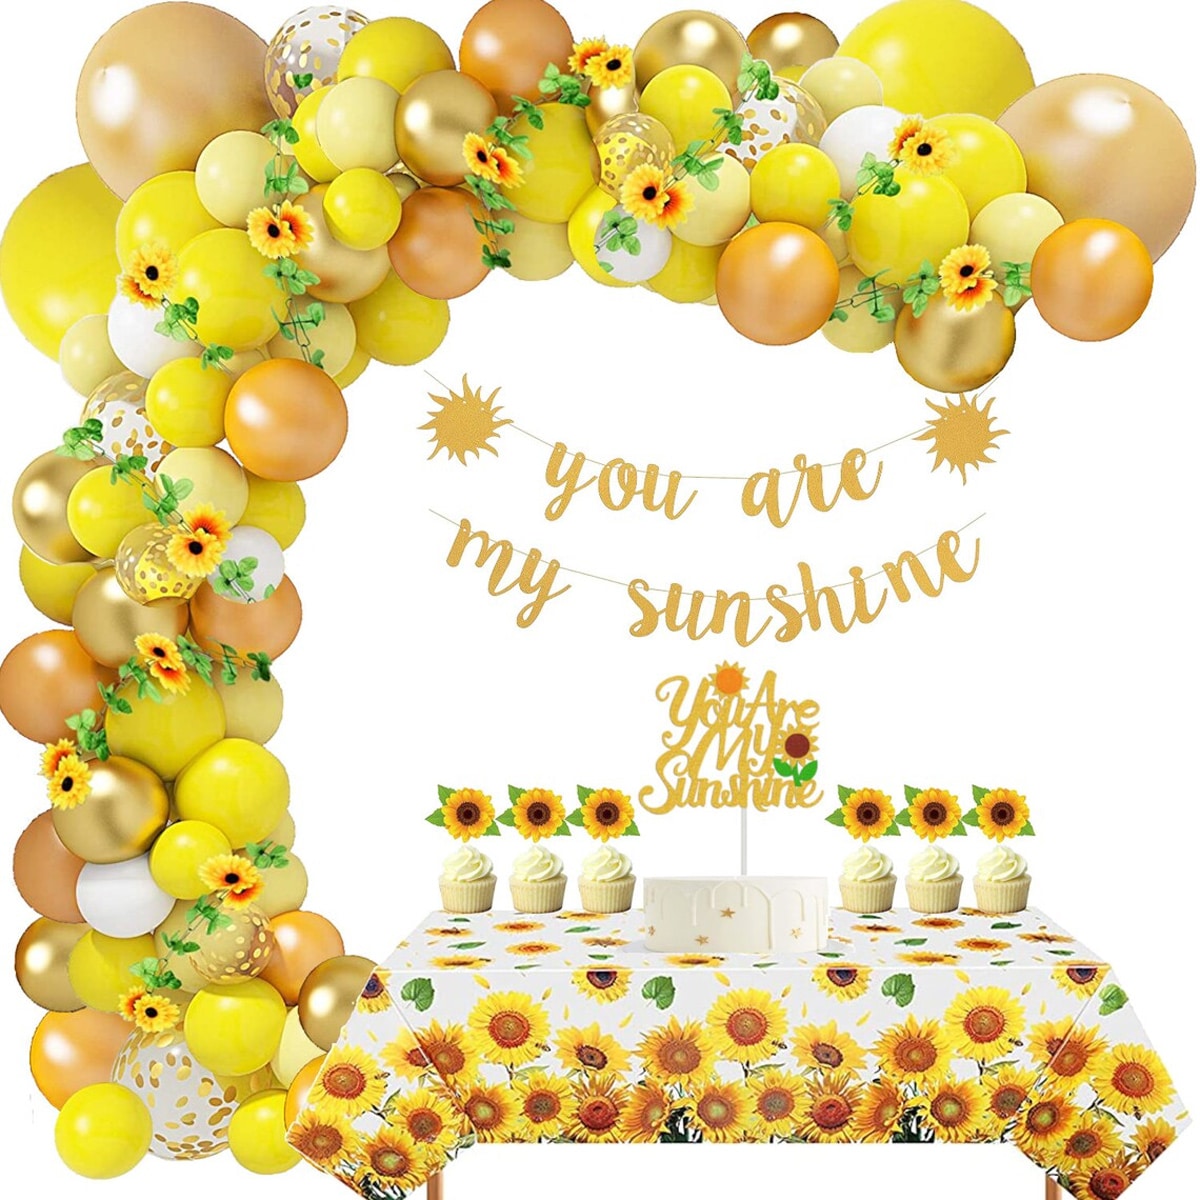 sunny-themed celebration